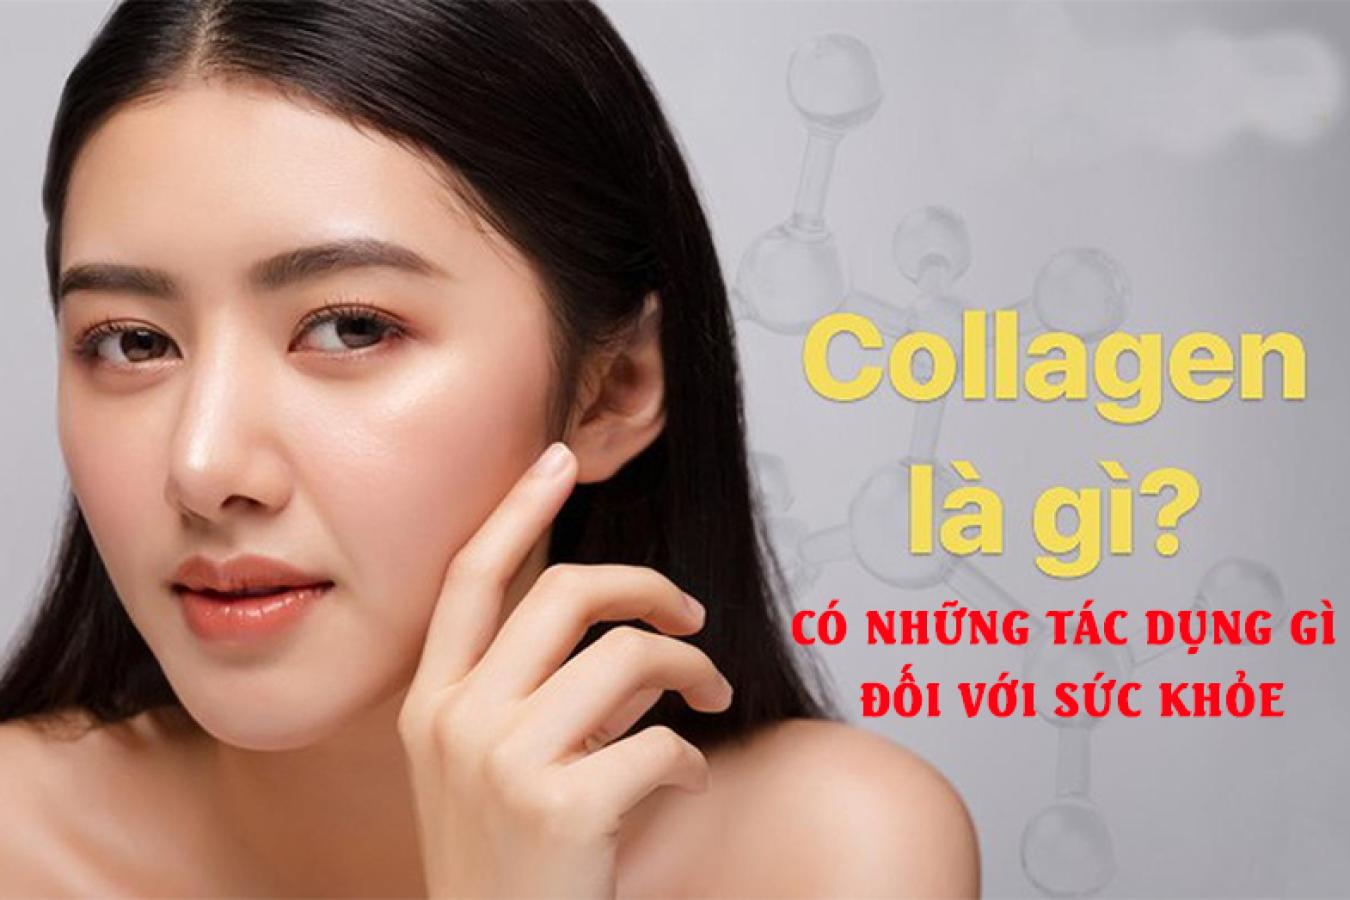 Collagen là gì? Có những tác dụng gì đối với sức khỏe